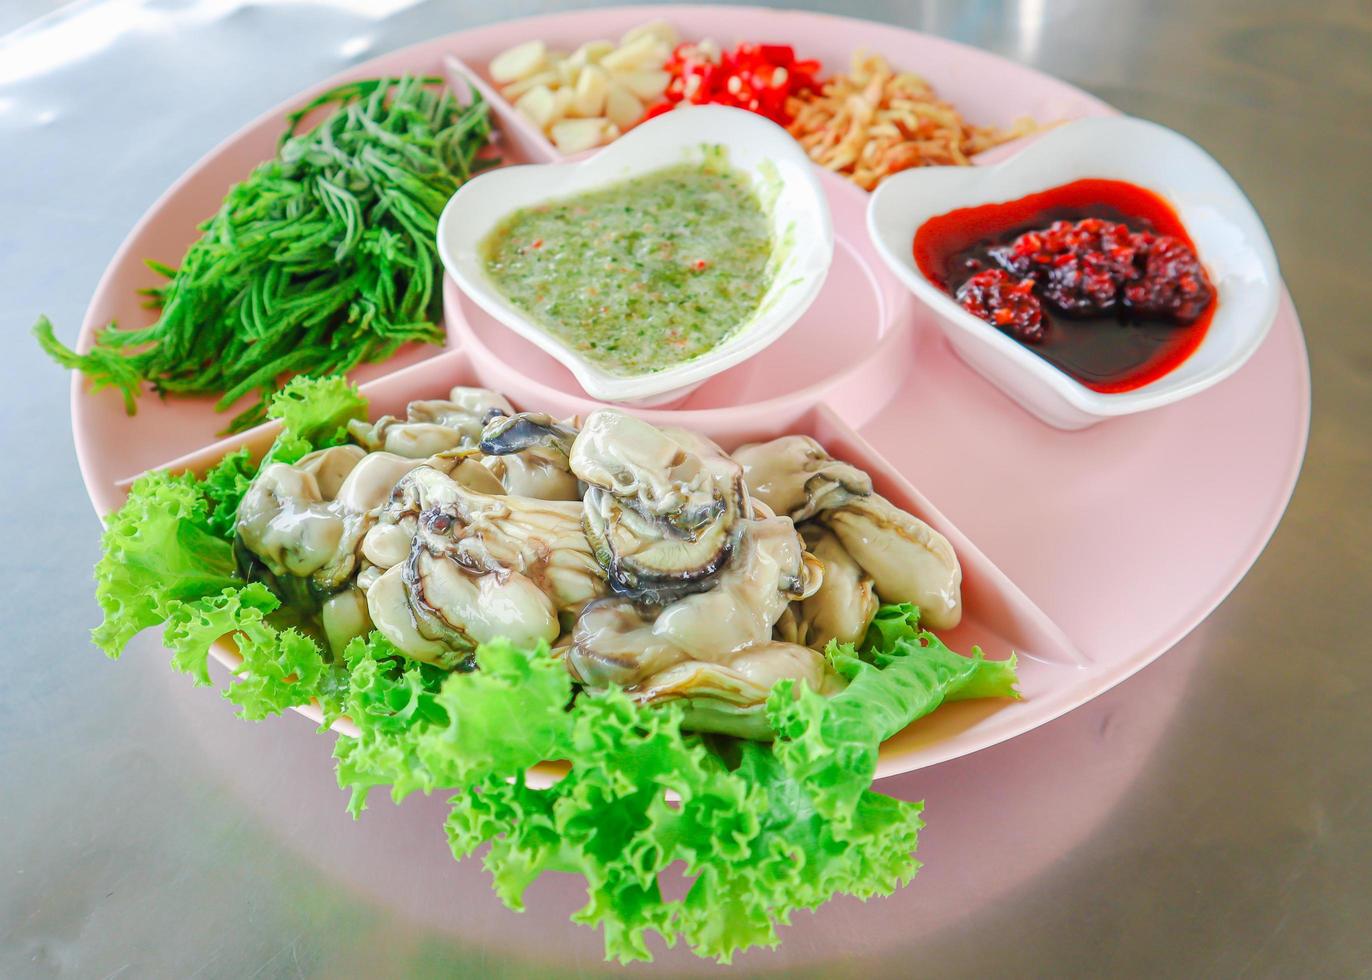 färsk ostronsallad med thailändska örter, favoritmeny för thailändsk skaldjur. foto